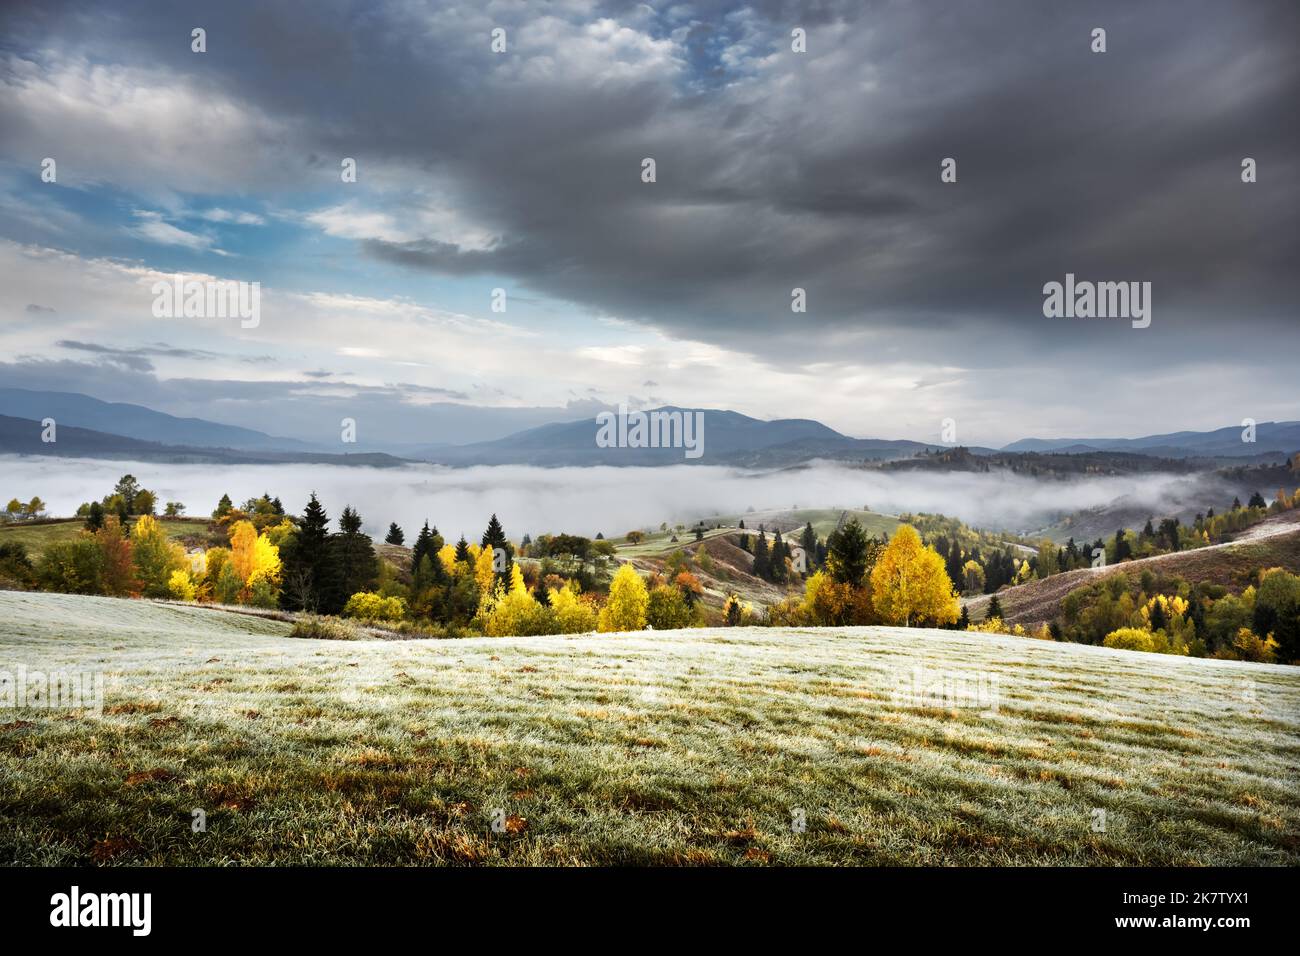 Scène incroyable sur les montagnes d'automne. Arbres jaunes et orangés dans un brouillard fantastique le matin. Carpates, Europe. Photographie de paysage Banque D'Images